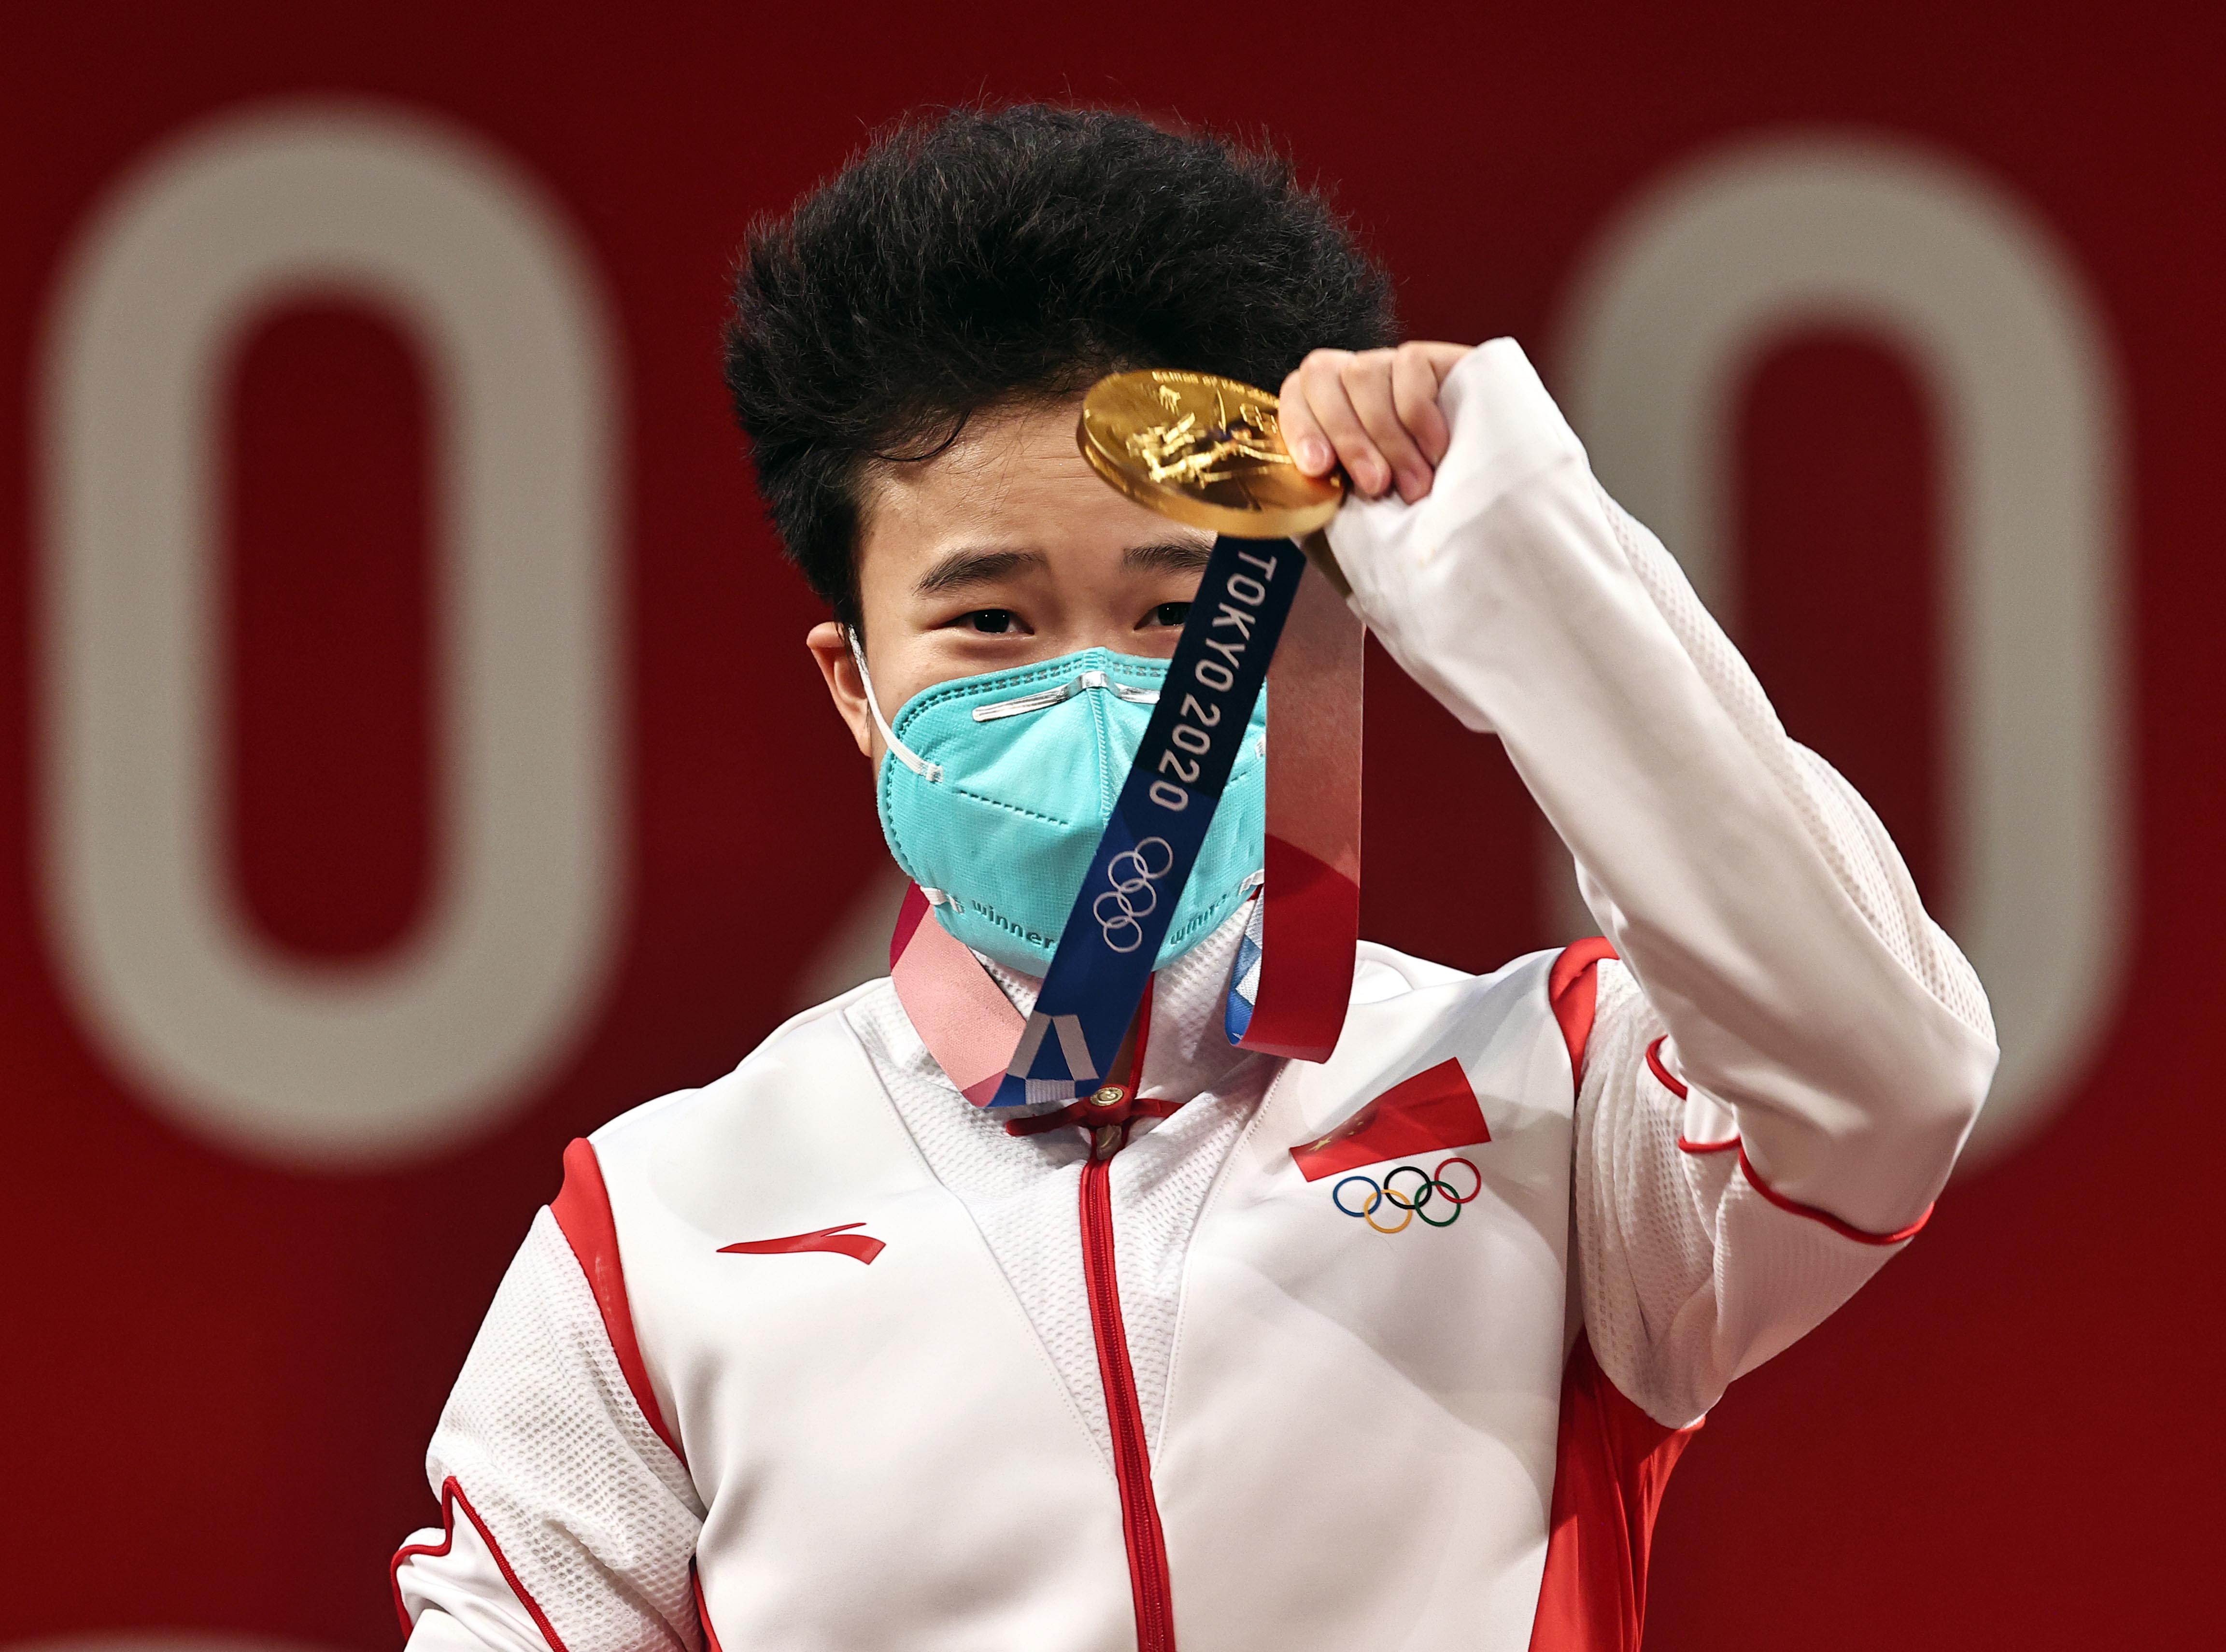 侯志慧终于戴上了金牌。